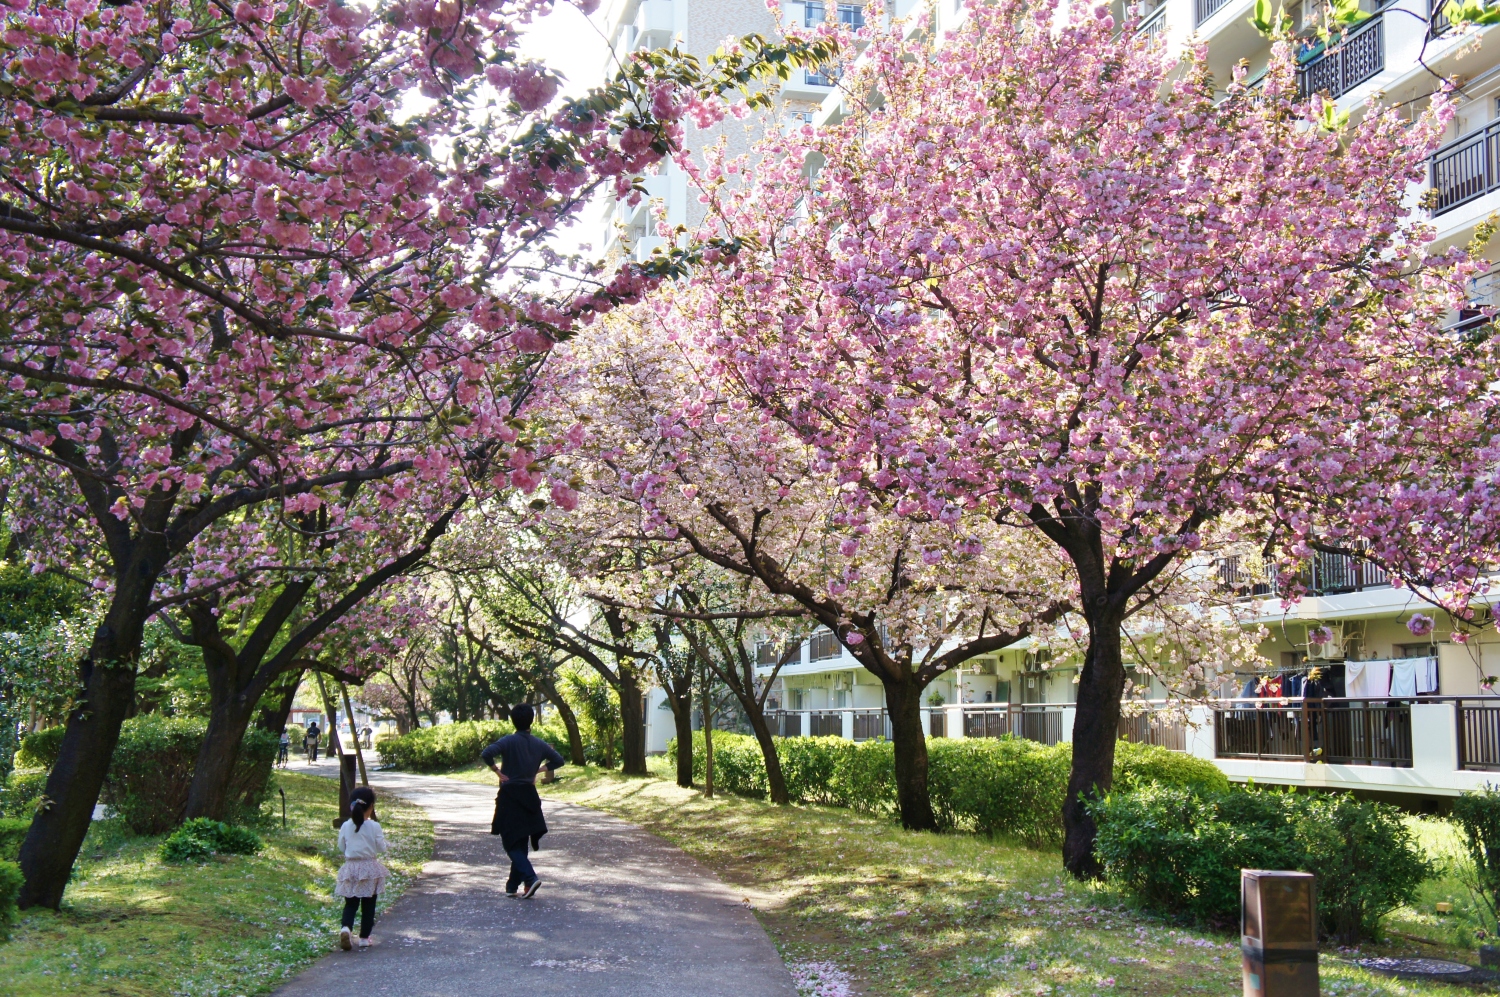 八重桜 牡丹桜 とっておきの練馬 写真館 とっておきの練馬